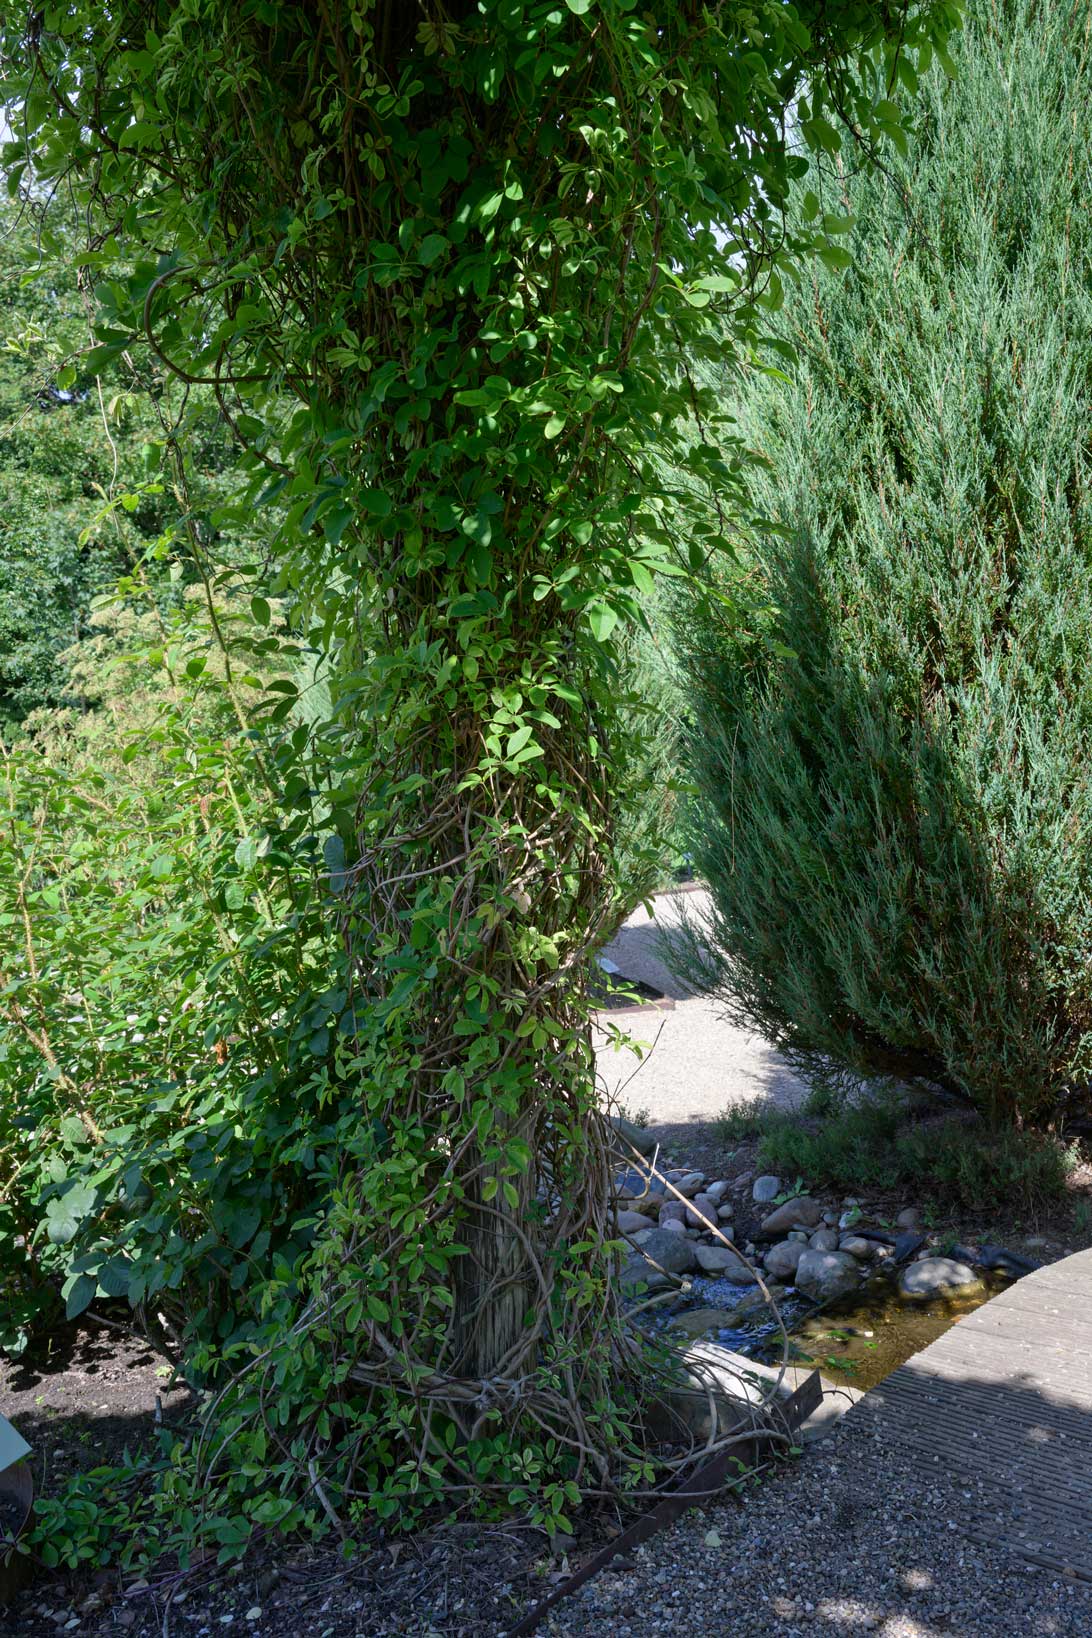 Akebiaplanten i Haven for urin- og kønsveje er en klatreplante, som gror i havens robiniepergola. 